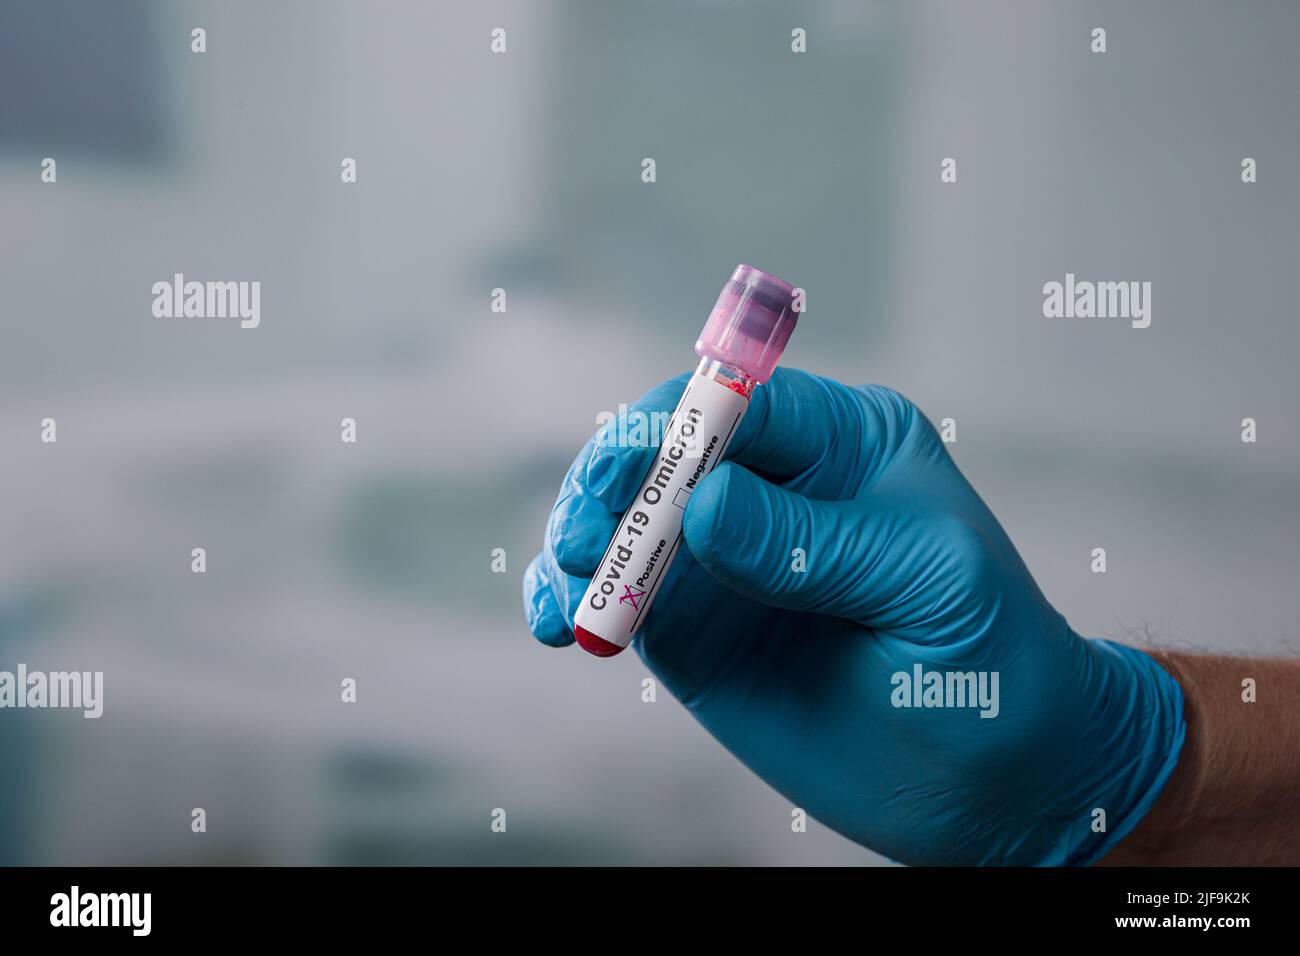 mano con un guante azul sujetando un tubo de análisis de sangre con marcador de corona positivo delante de una sala de laboratorio Foto de stock